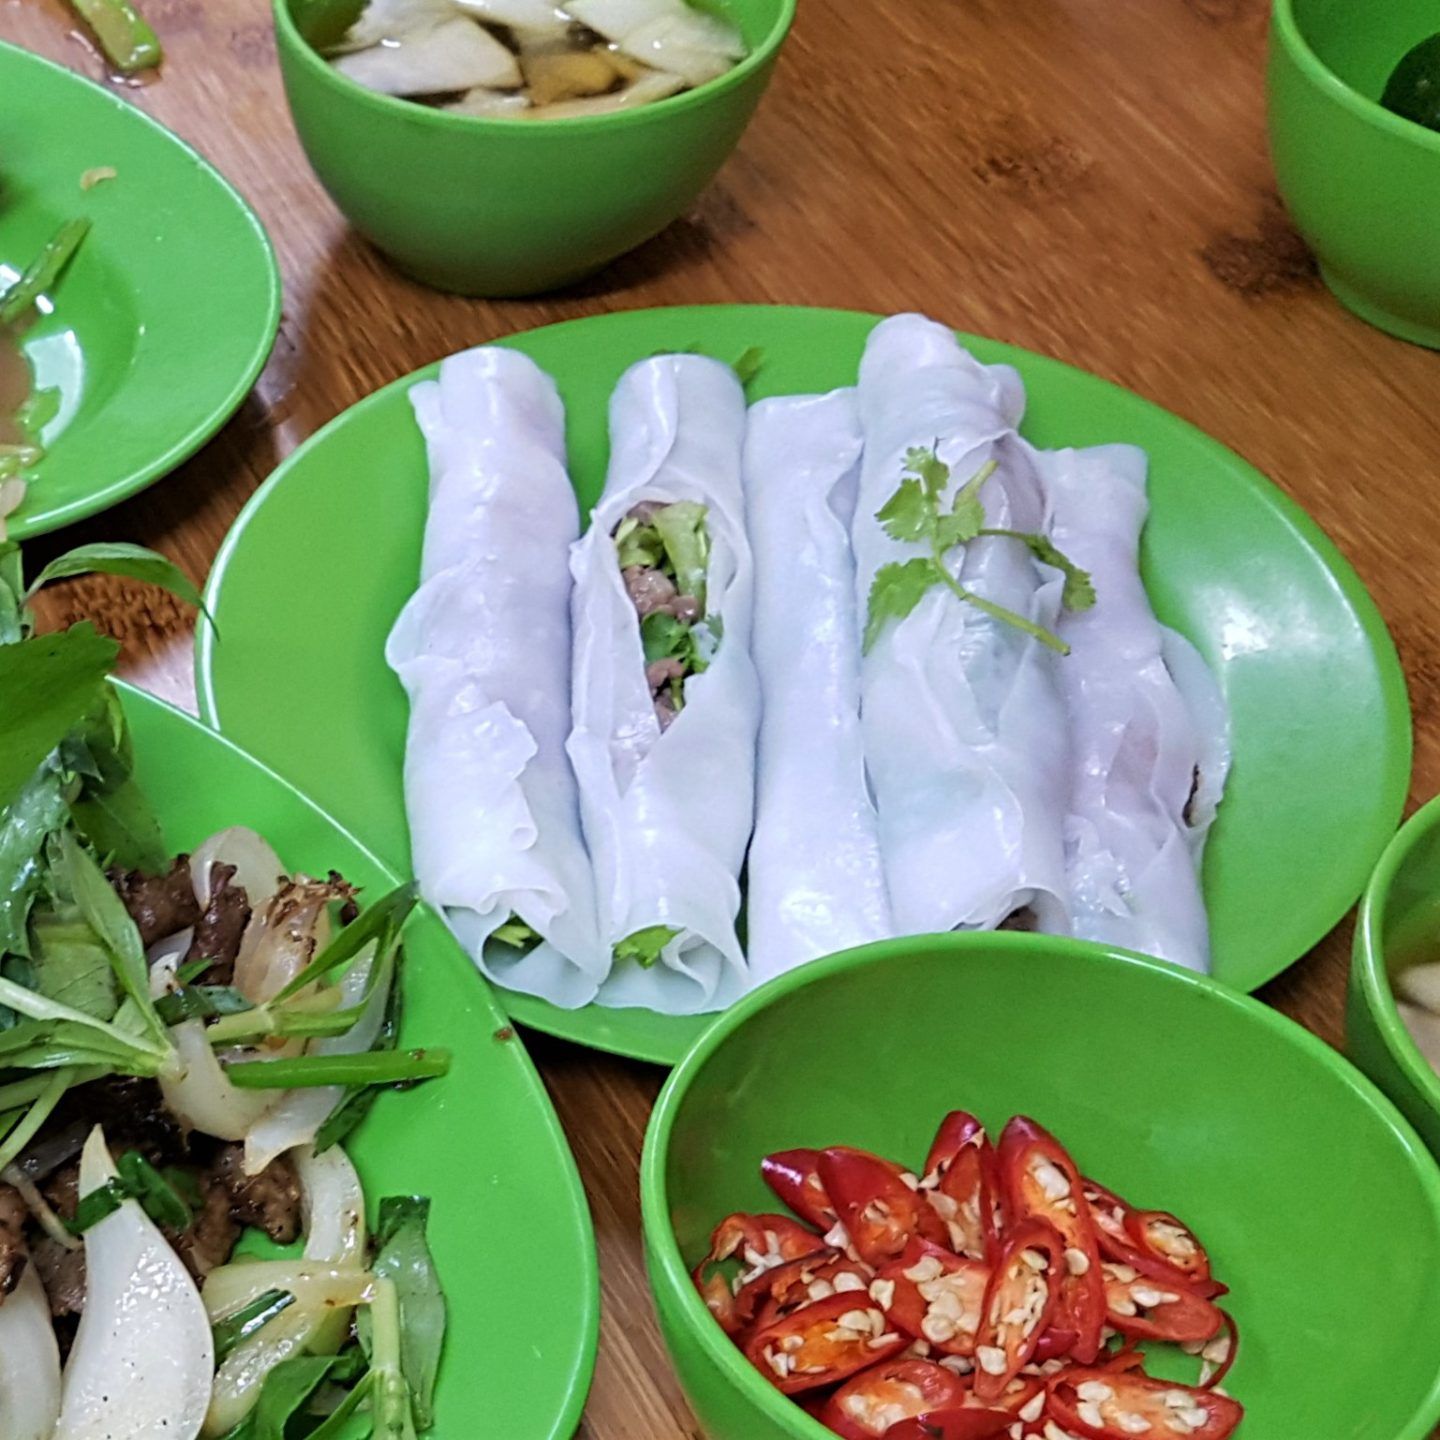 Dónde comer en Hanoi: caldos reparadores, baguettes imposibles y ¡café con huevo! 19 restauranes y puestos de comida callejera para comer barato en Hanoi | Gastronomadistas 